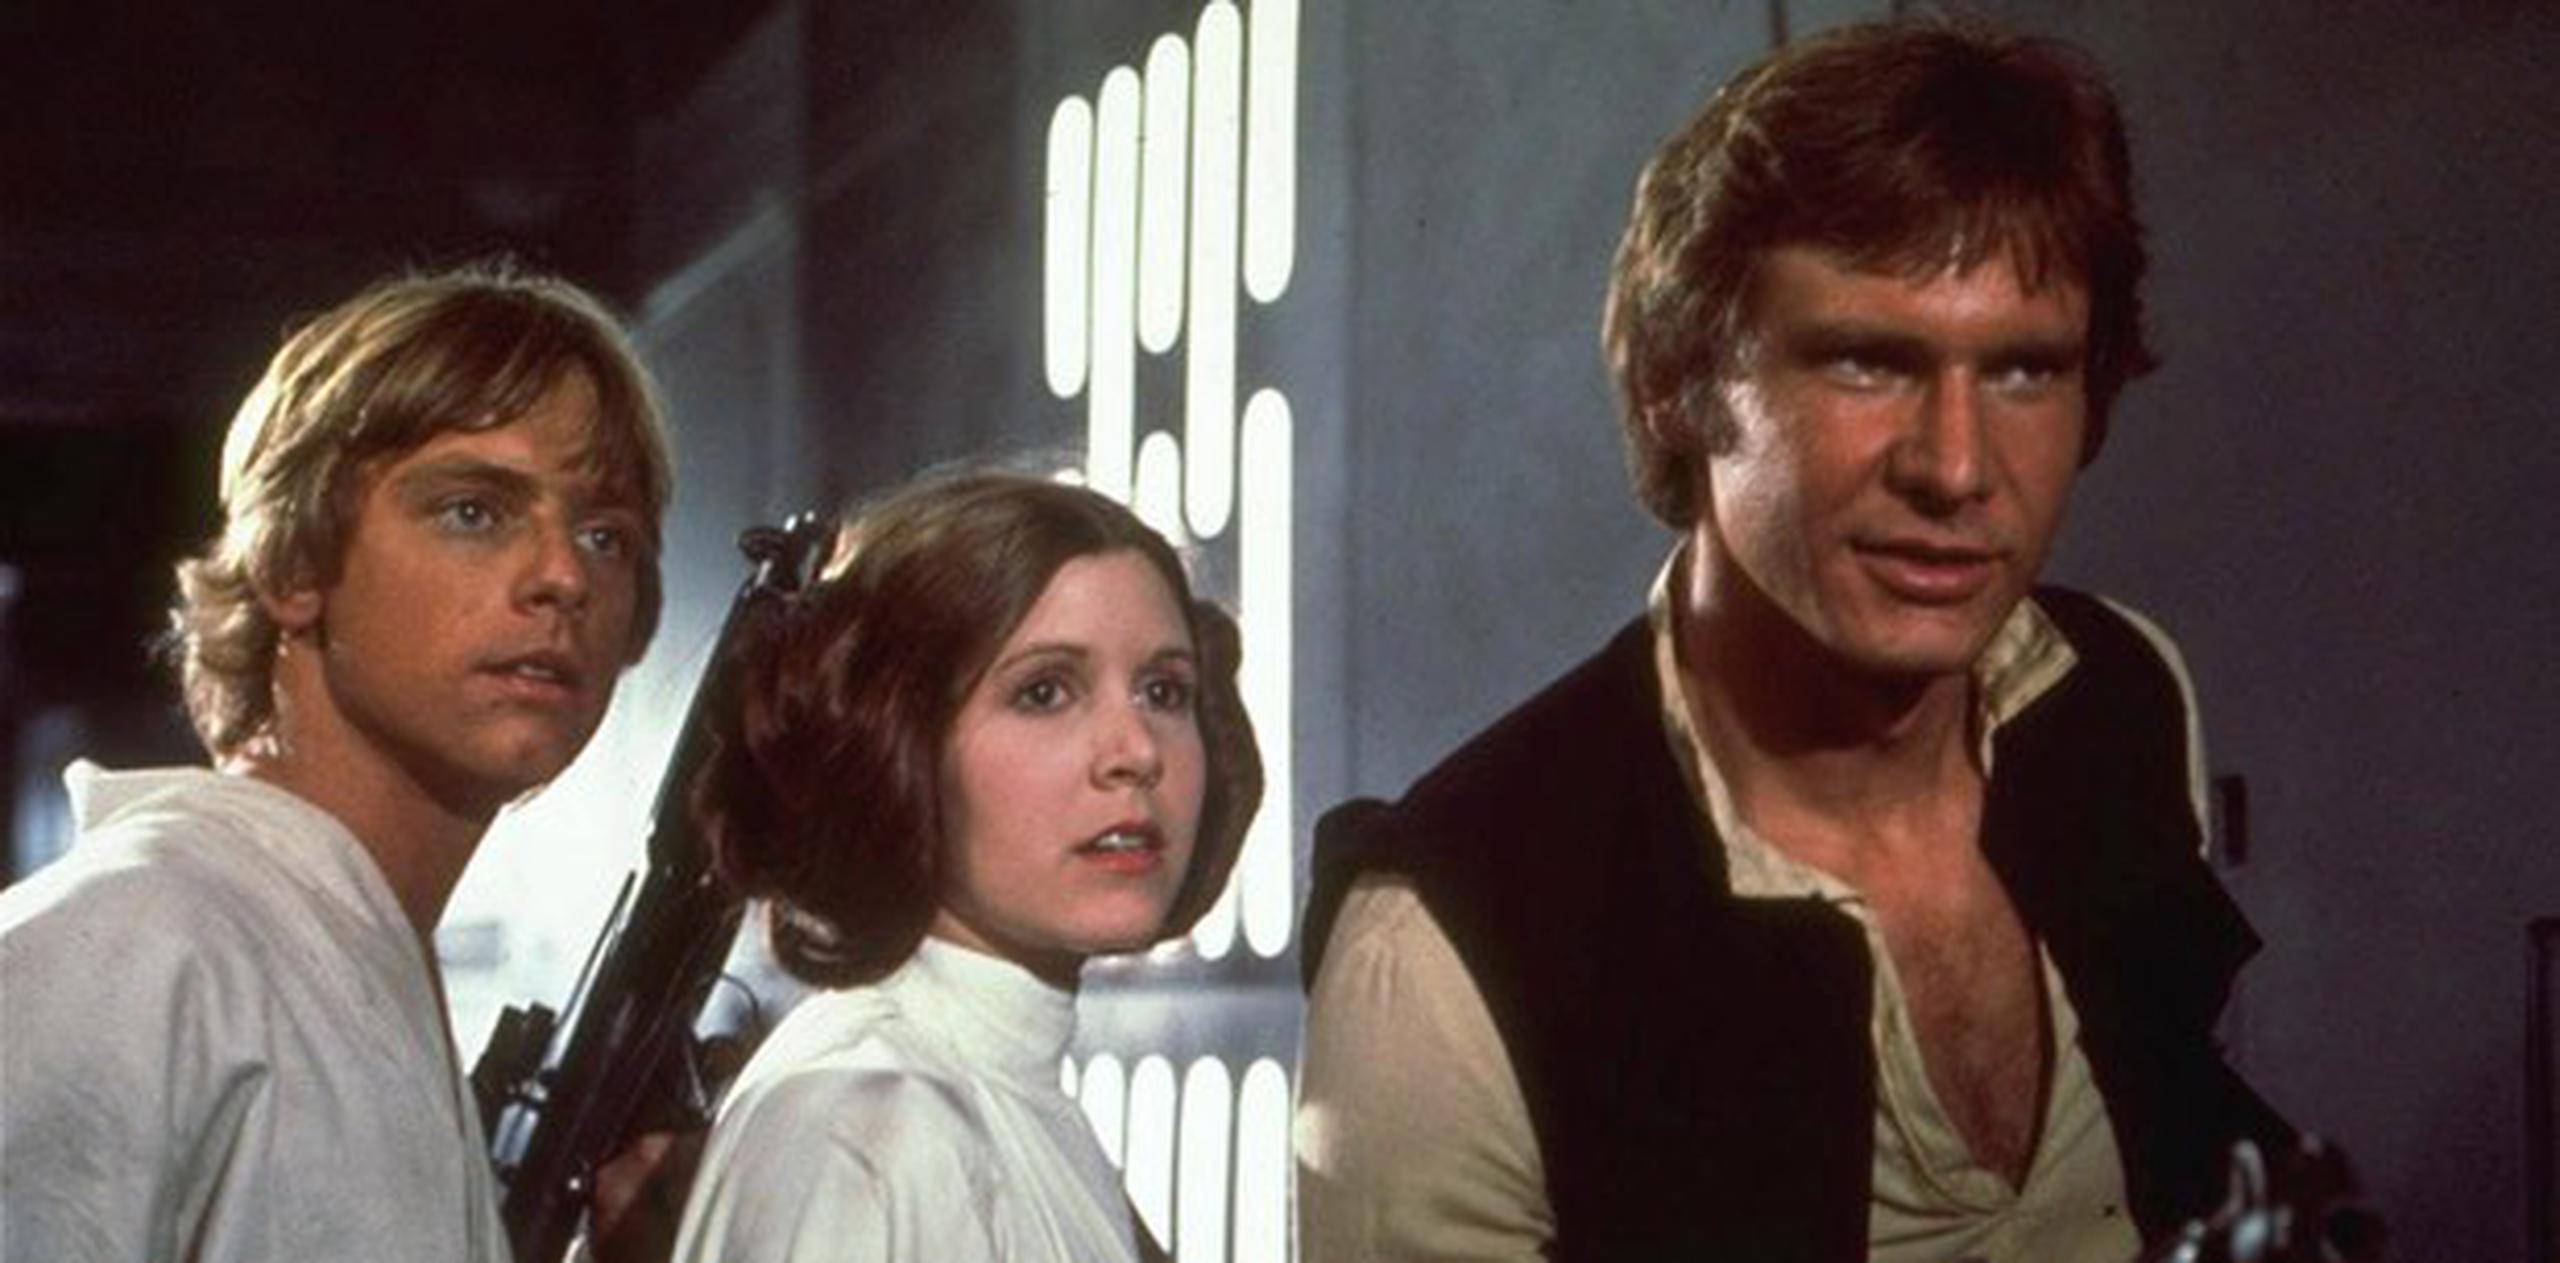 La prestigiosa editorial publicó el primer cómic de Star Wars en 1977 y continuó lanzando títulos de esta saga durante nueve años más. (Archivo)